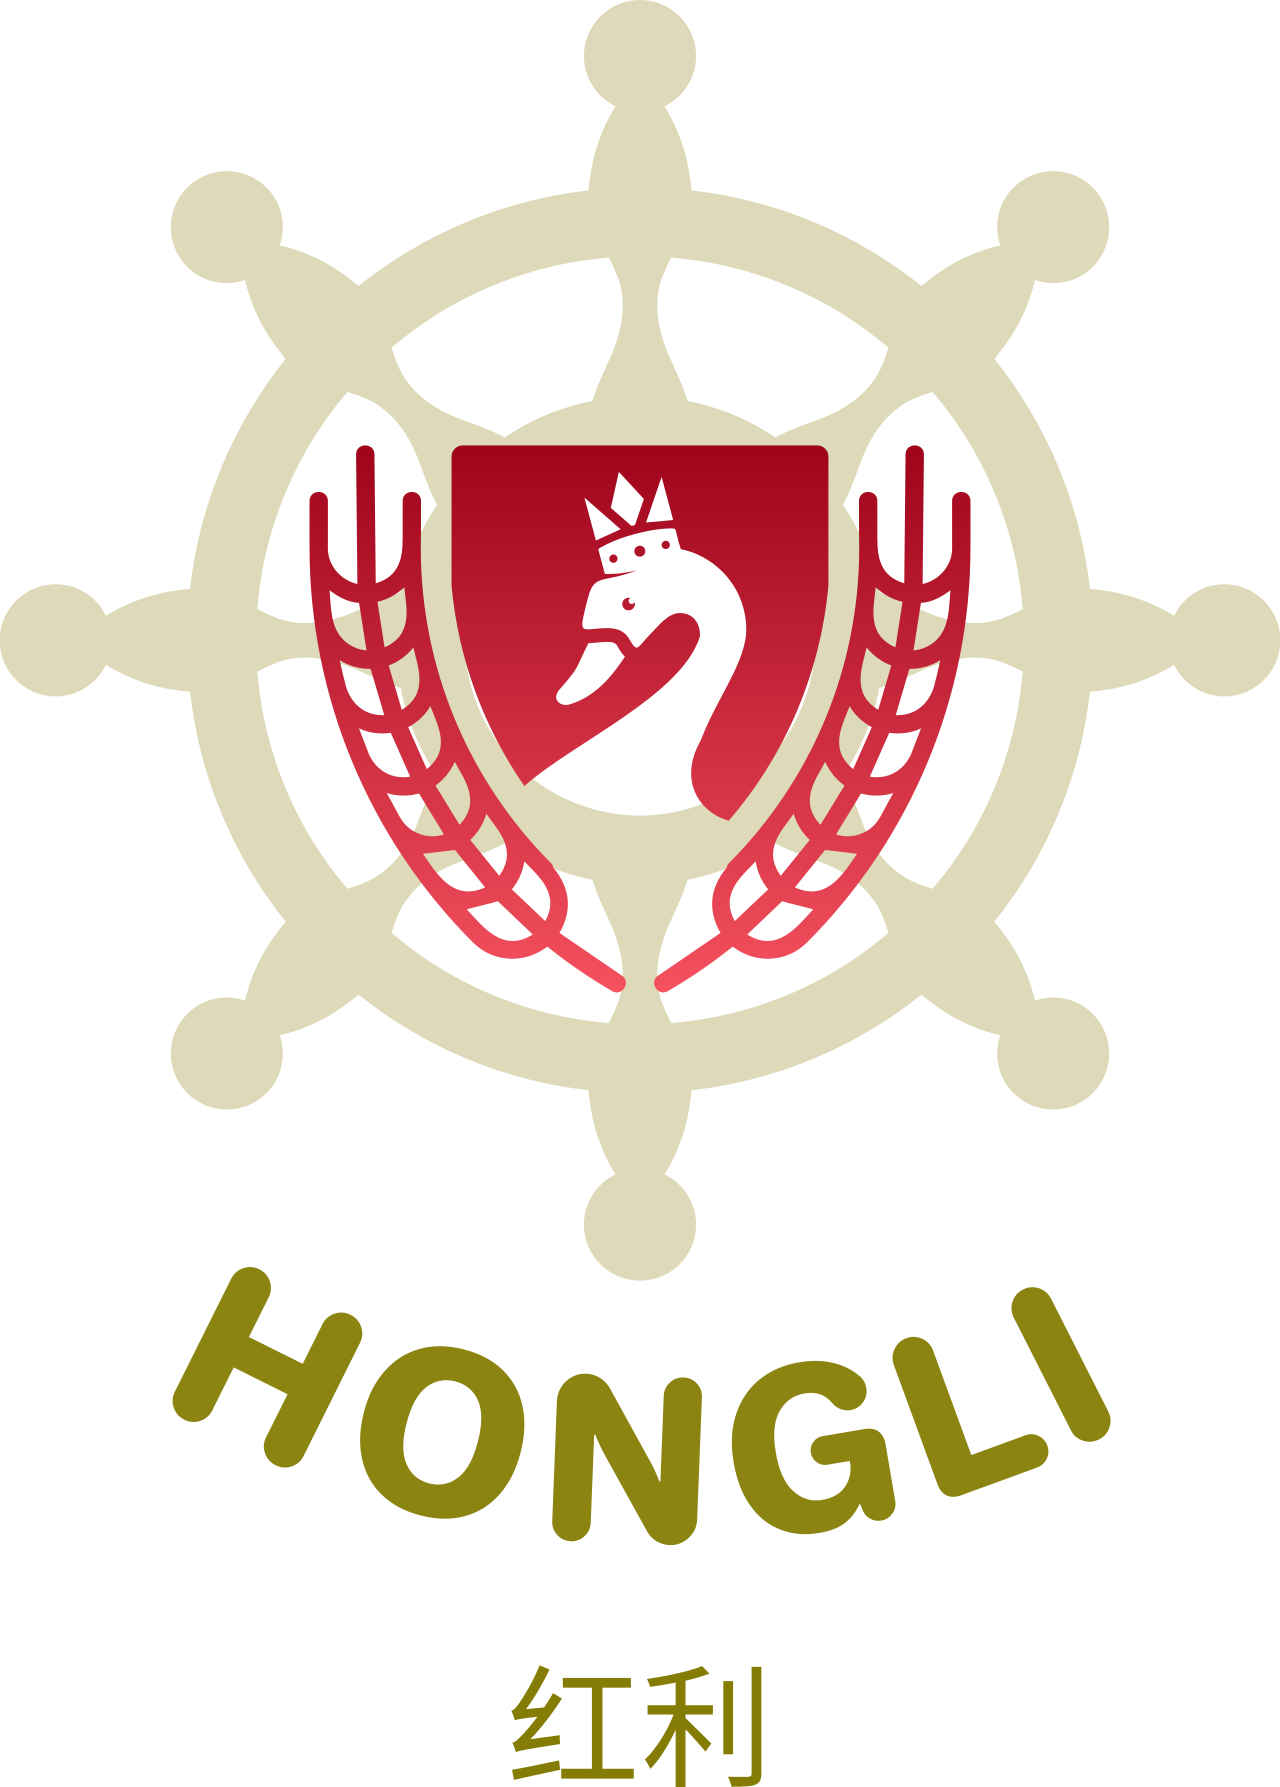 HONGLI 's web page